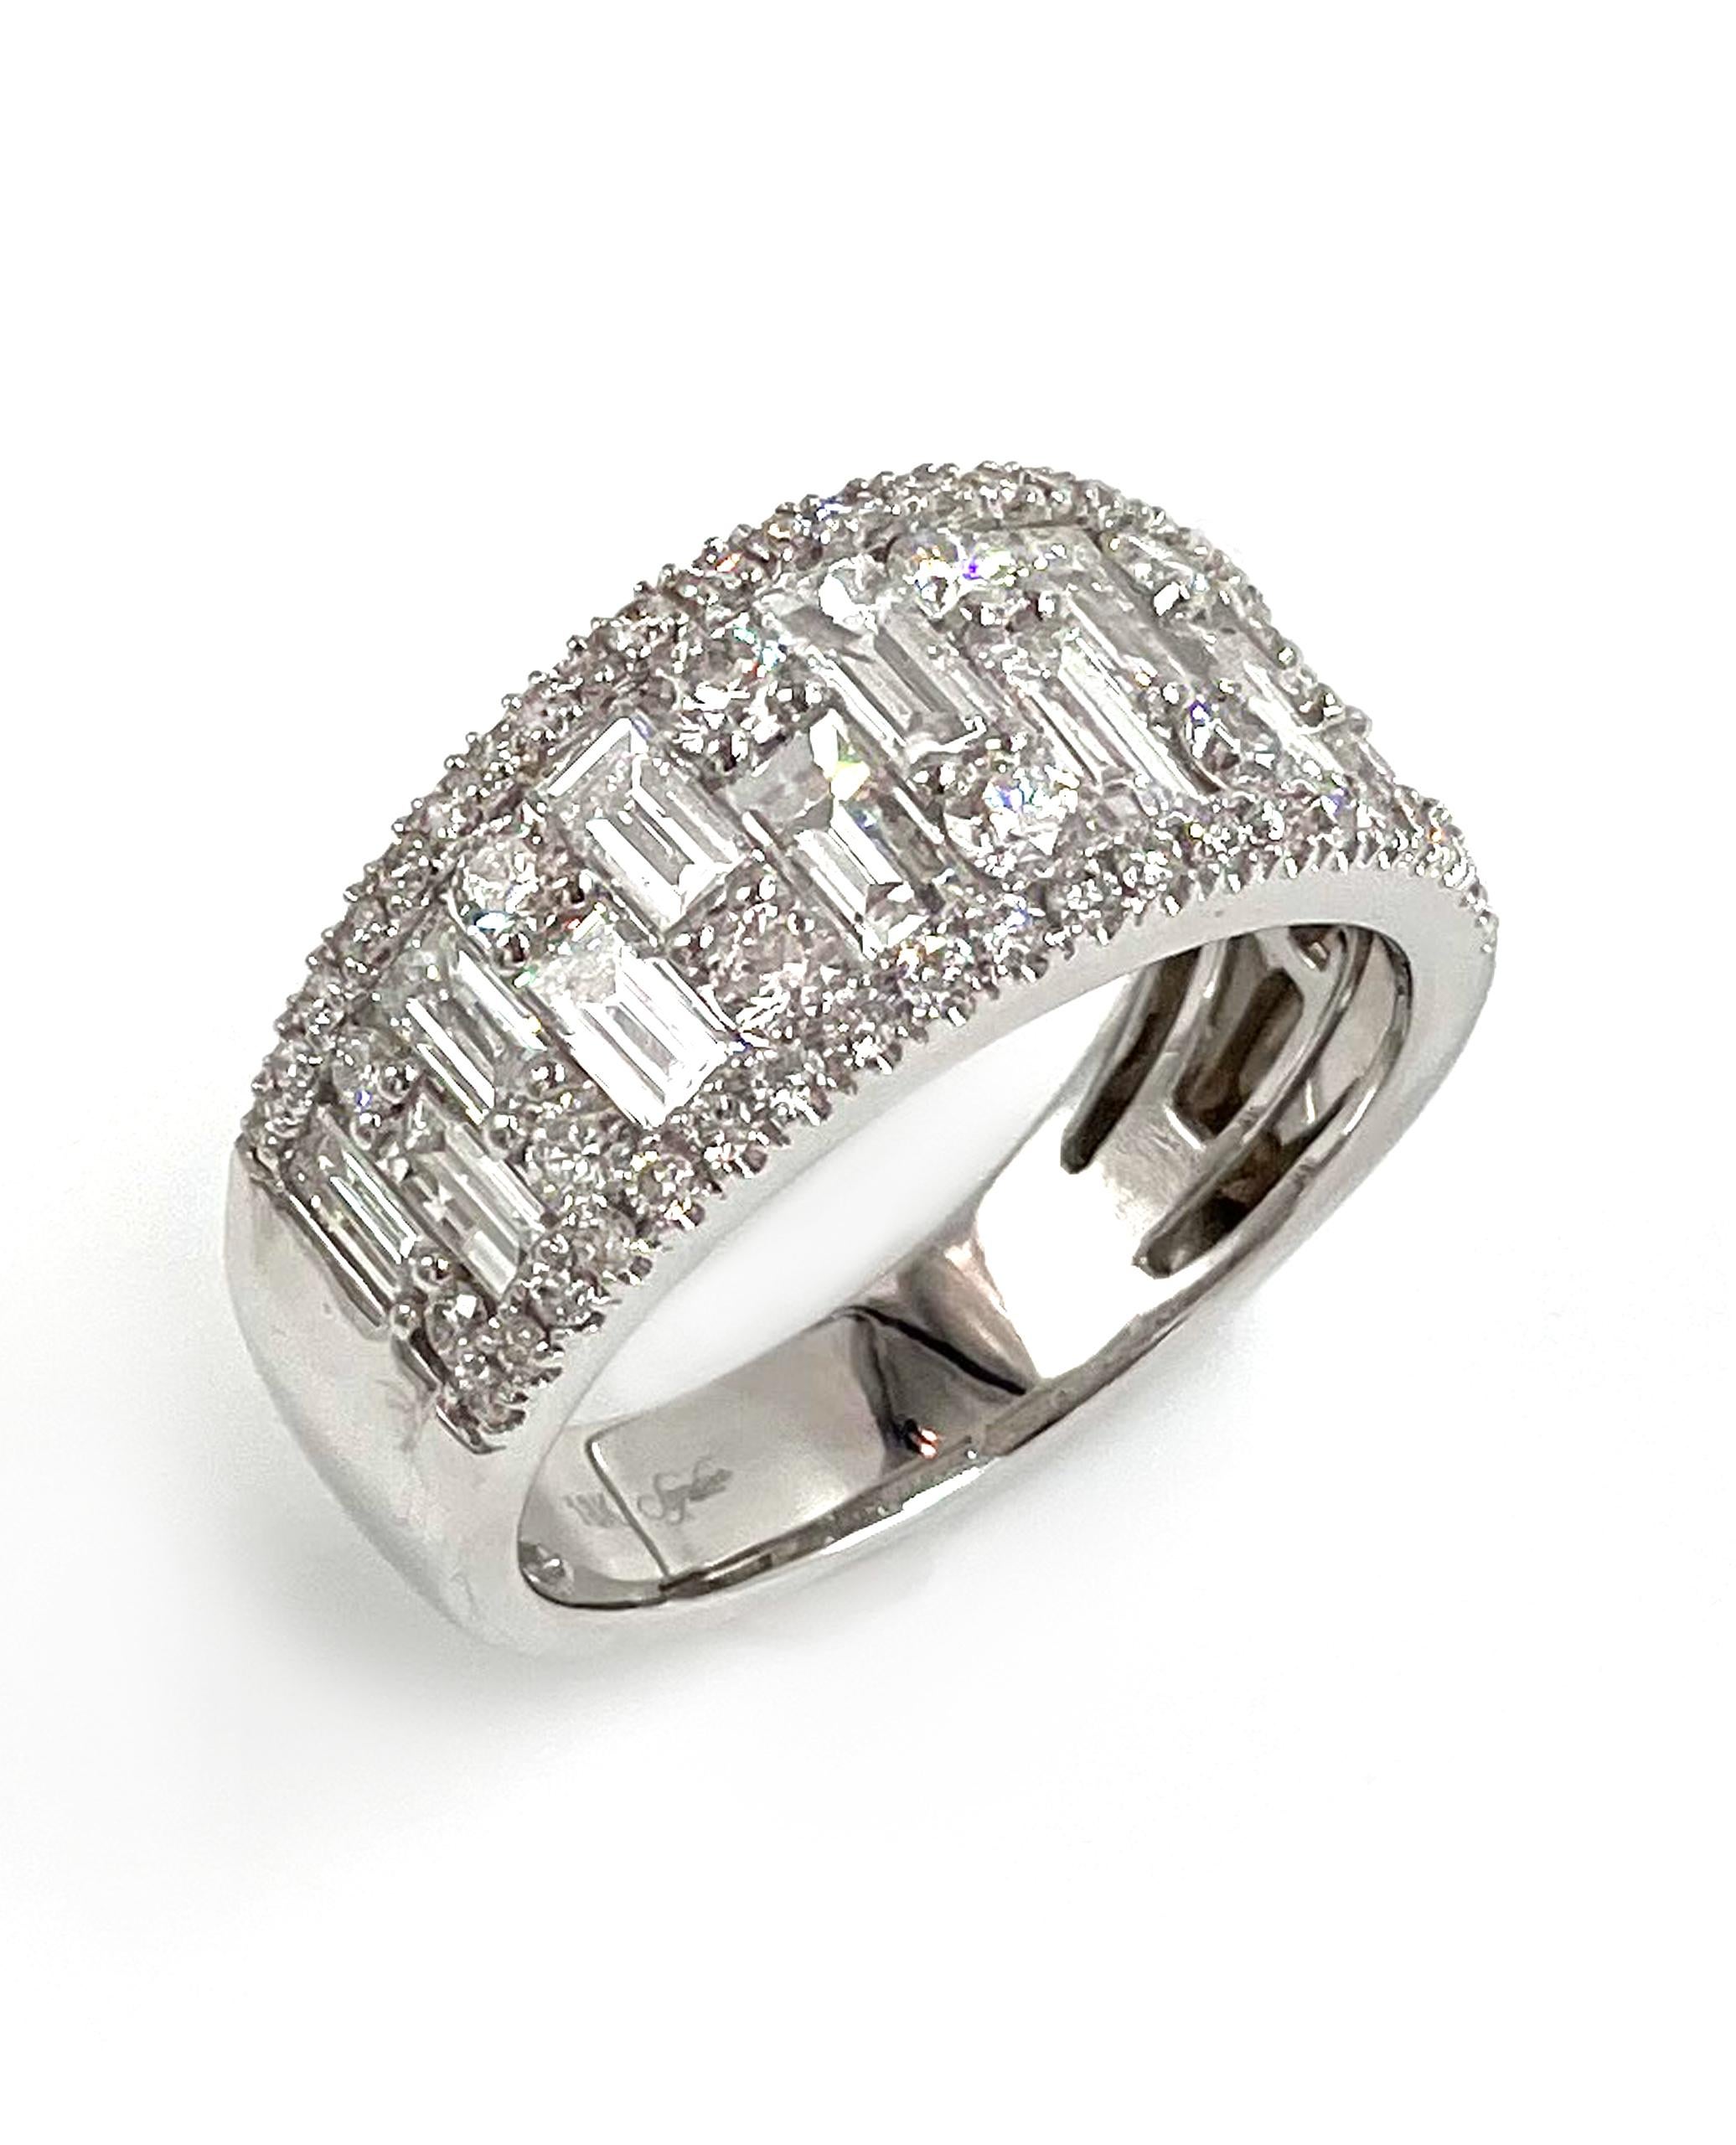 Ring aus 18 Karat Weißgold mit runden und Baguette-Diamanten von 2,23 Karat Gesamtgewicht. Farbe G/H, Reinheit VS2.

* Fingergröße: 7